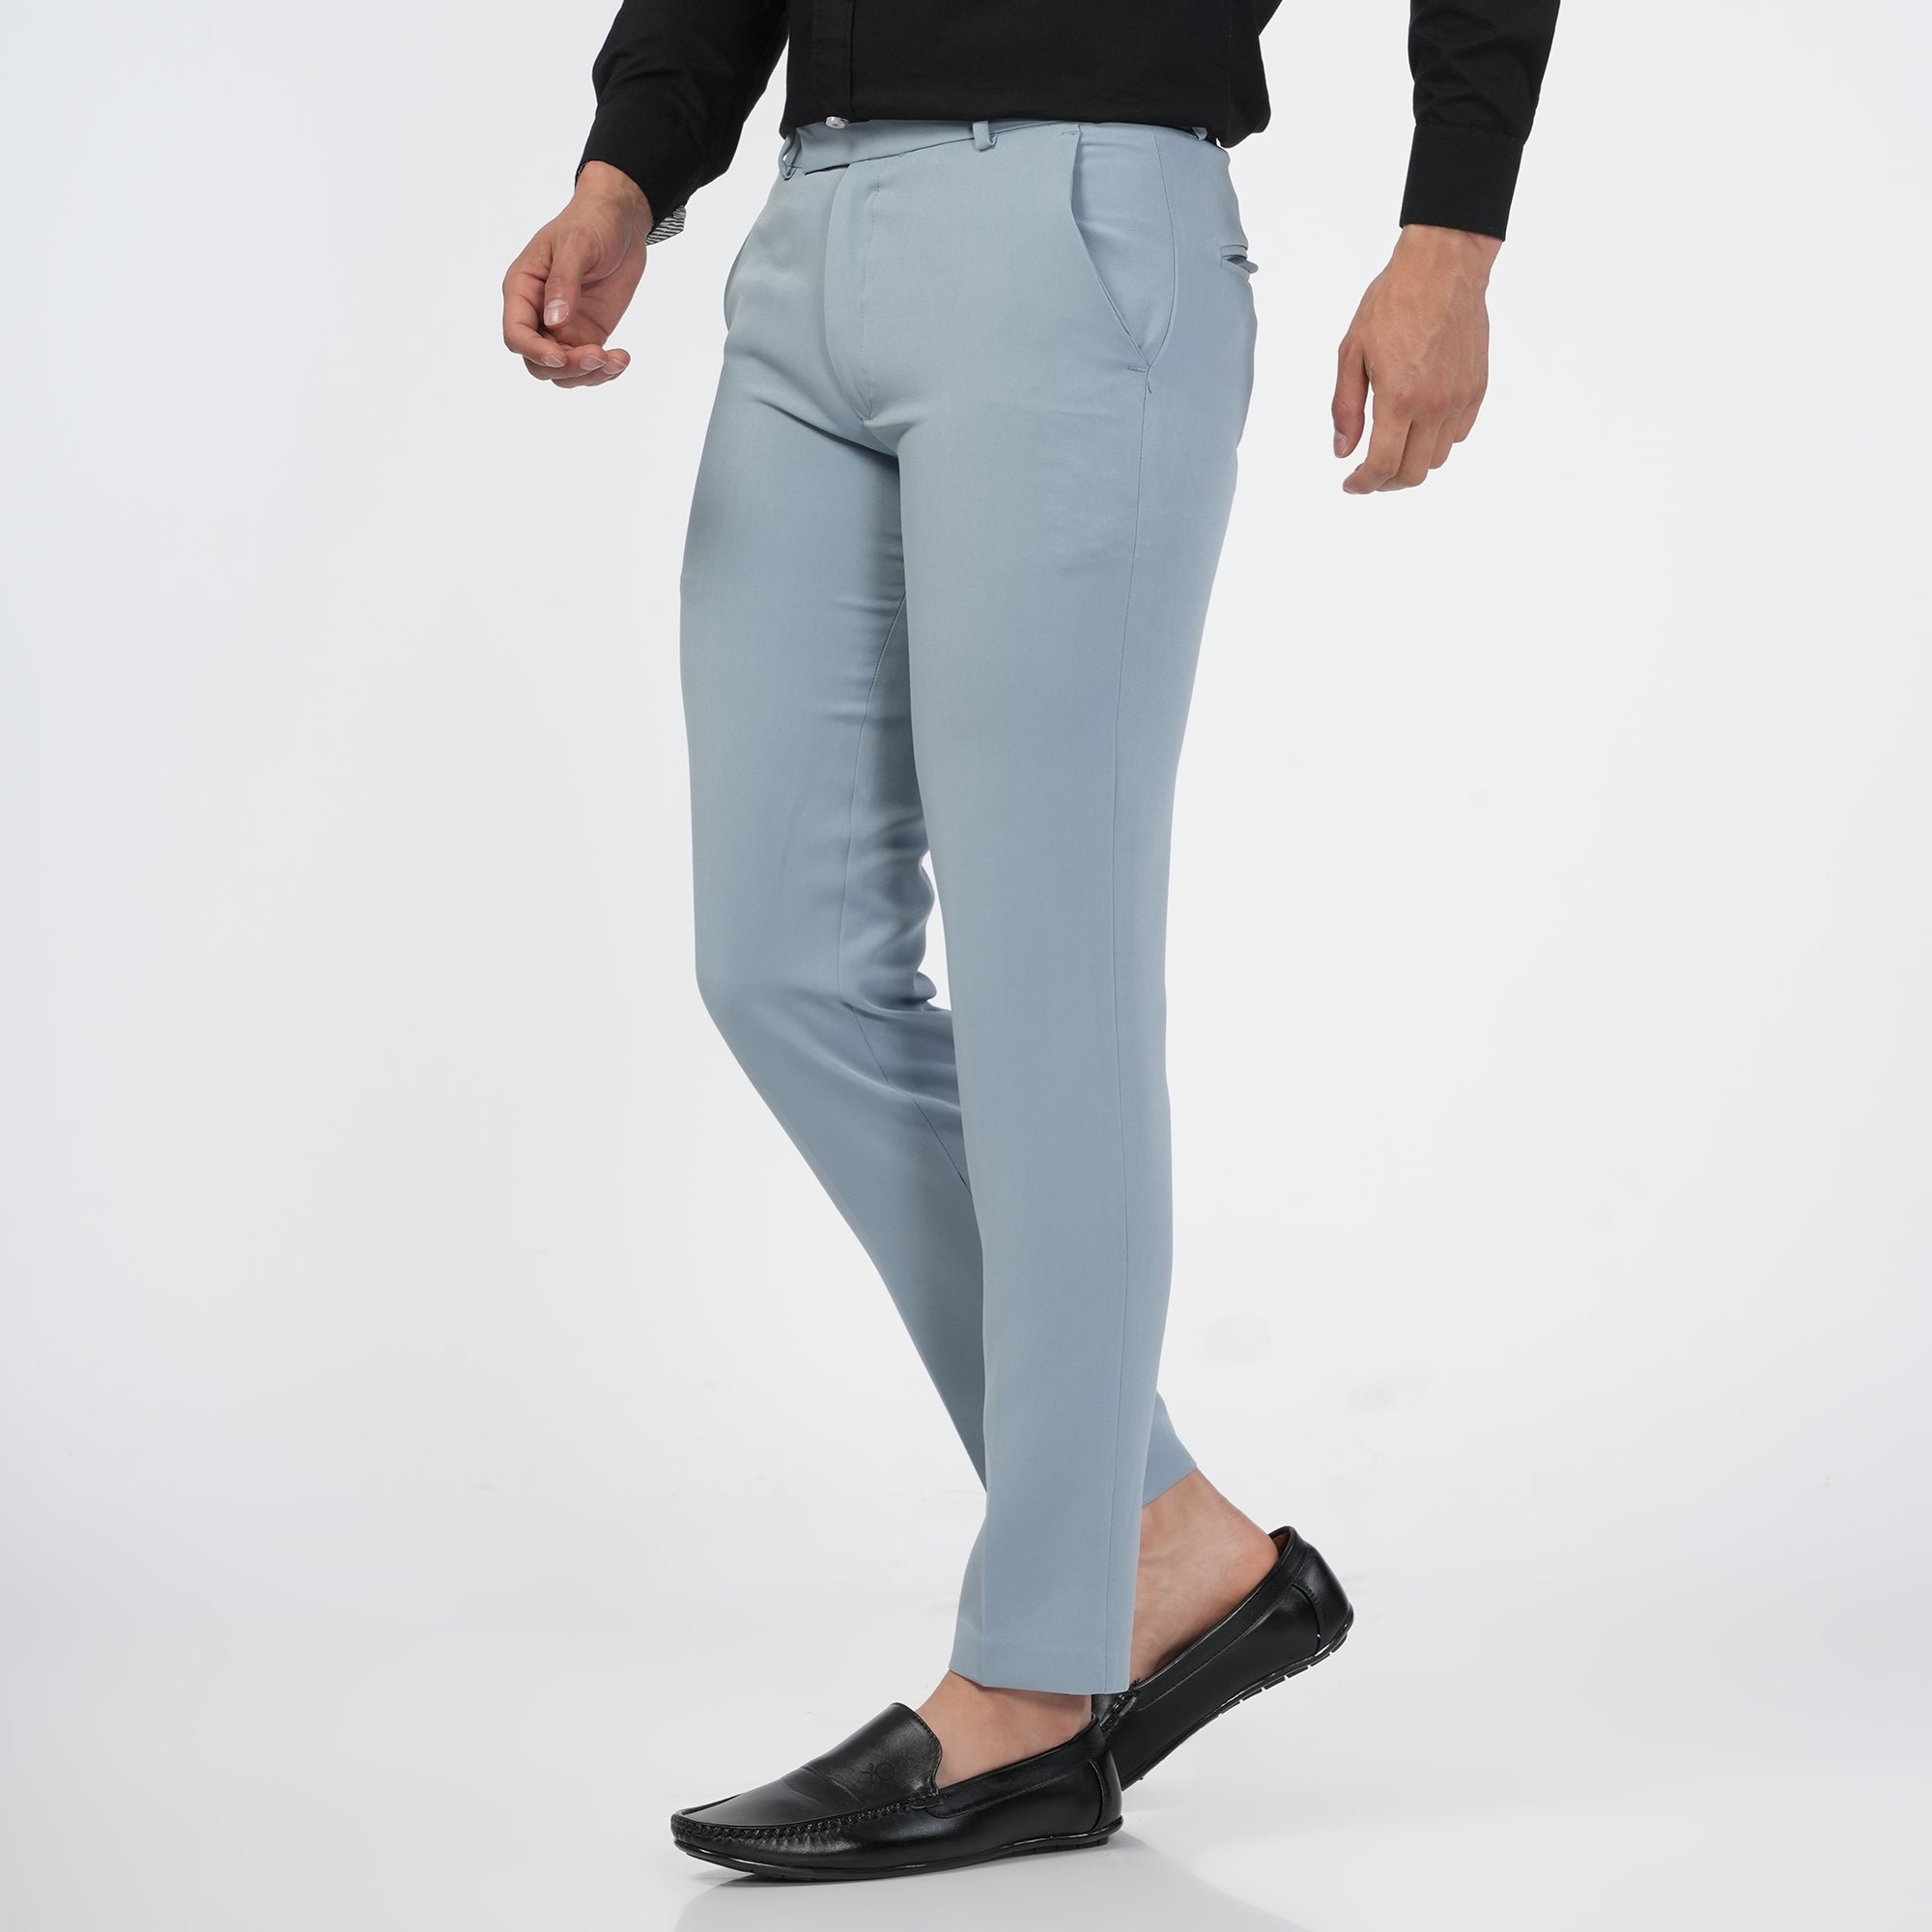 Plus Size Plus Size Black Cotton Linen Pants Online in India | Amydus